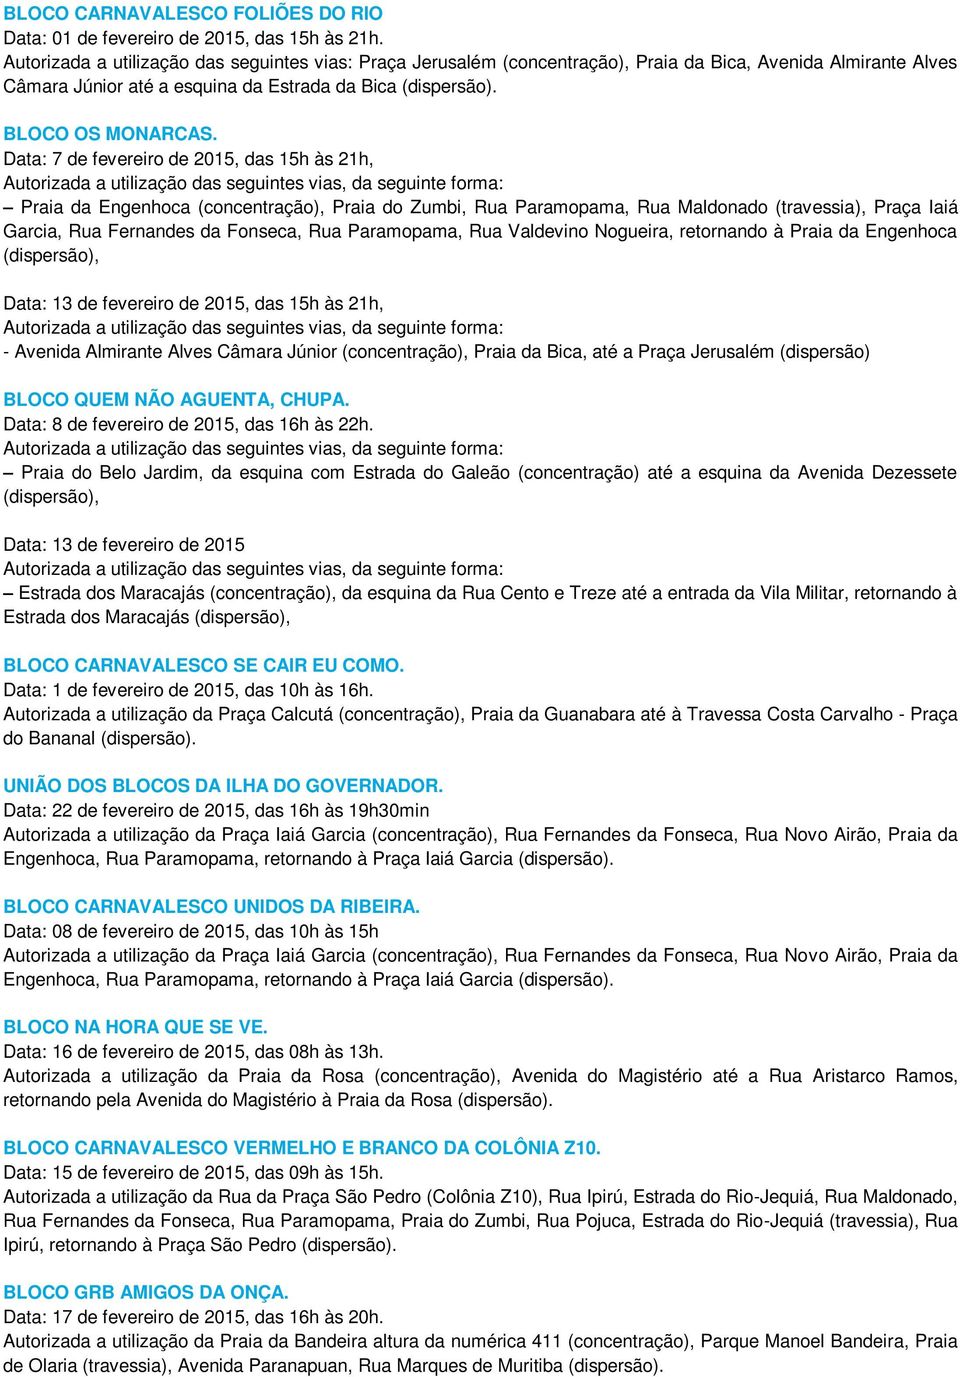 Data: 7 de fevereiro de 2015, das 15h às 21h, Autorizada a utilização das seguintes vias, da seguinte forma: Praia da Engenhoca (concentração), Praia do Zumbi, Rua Paramopama, Rua Maldonado